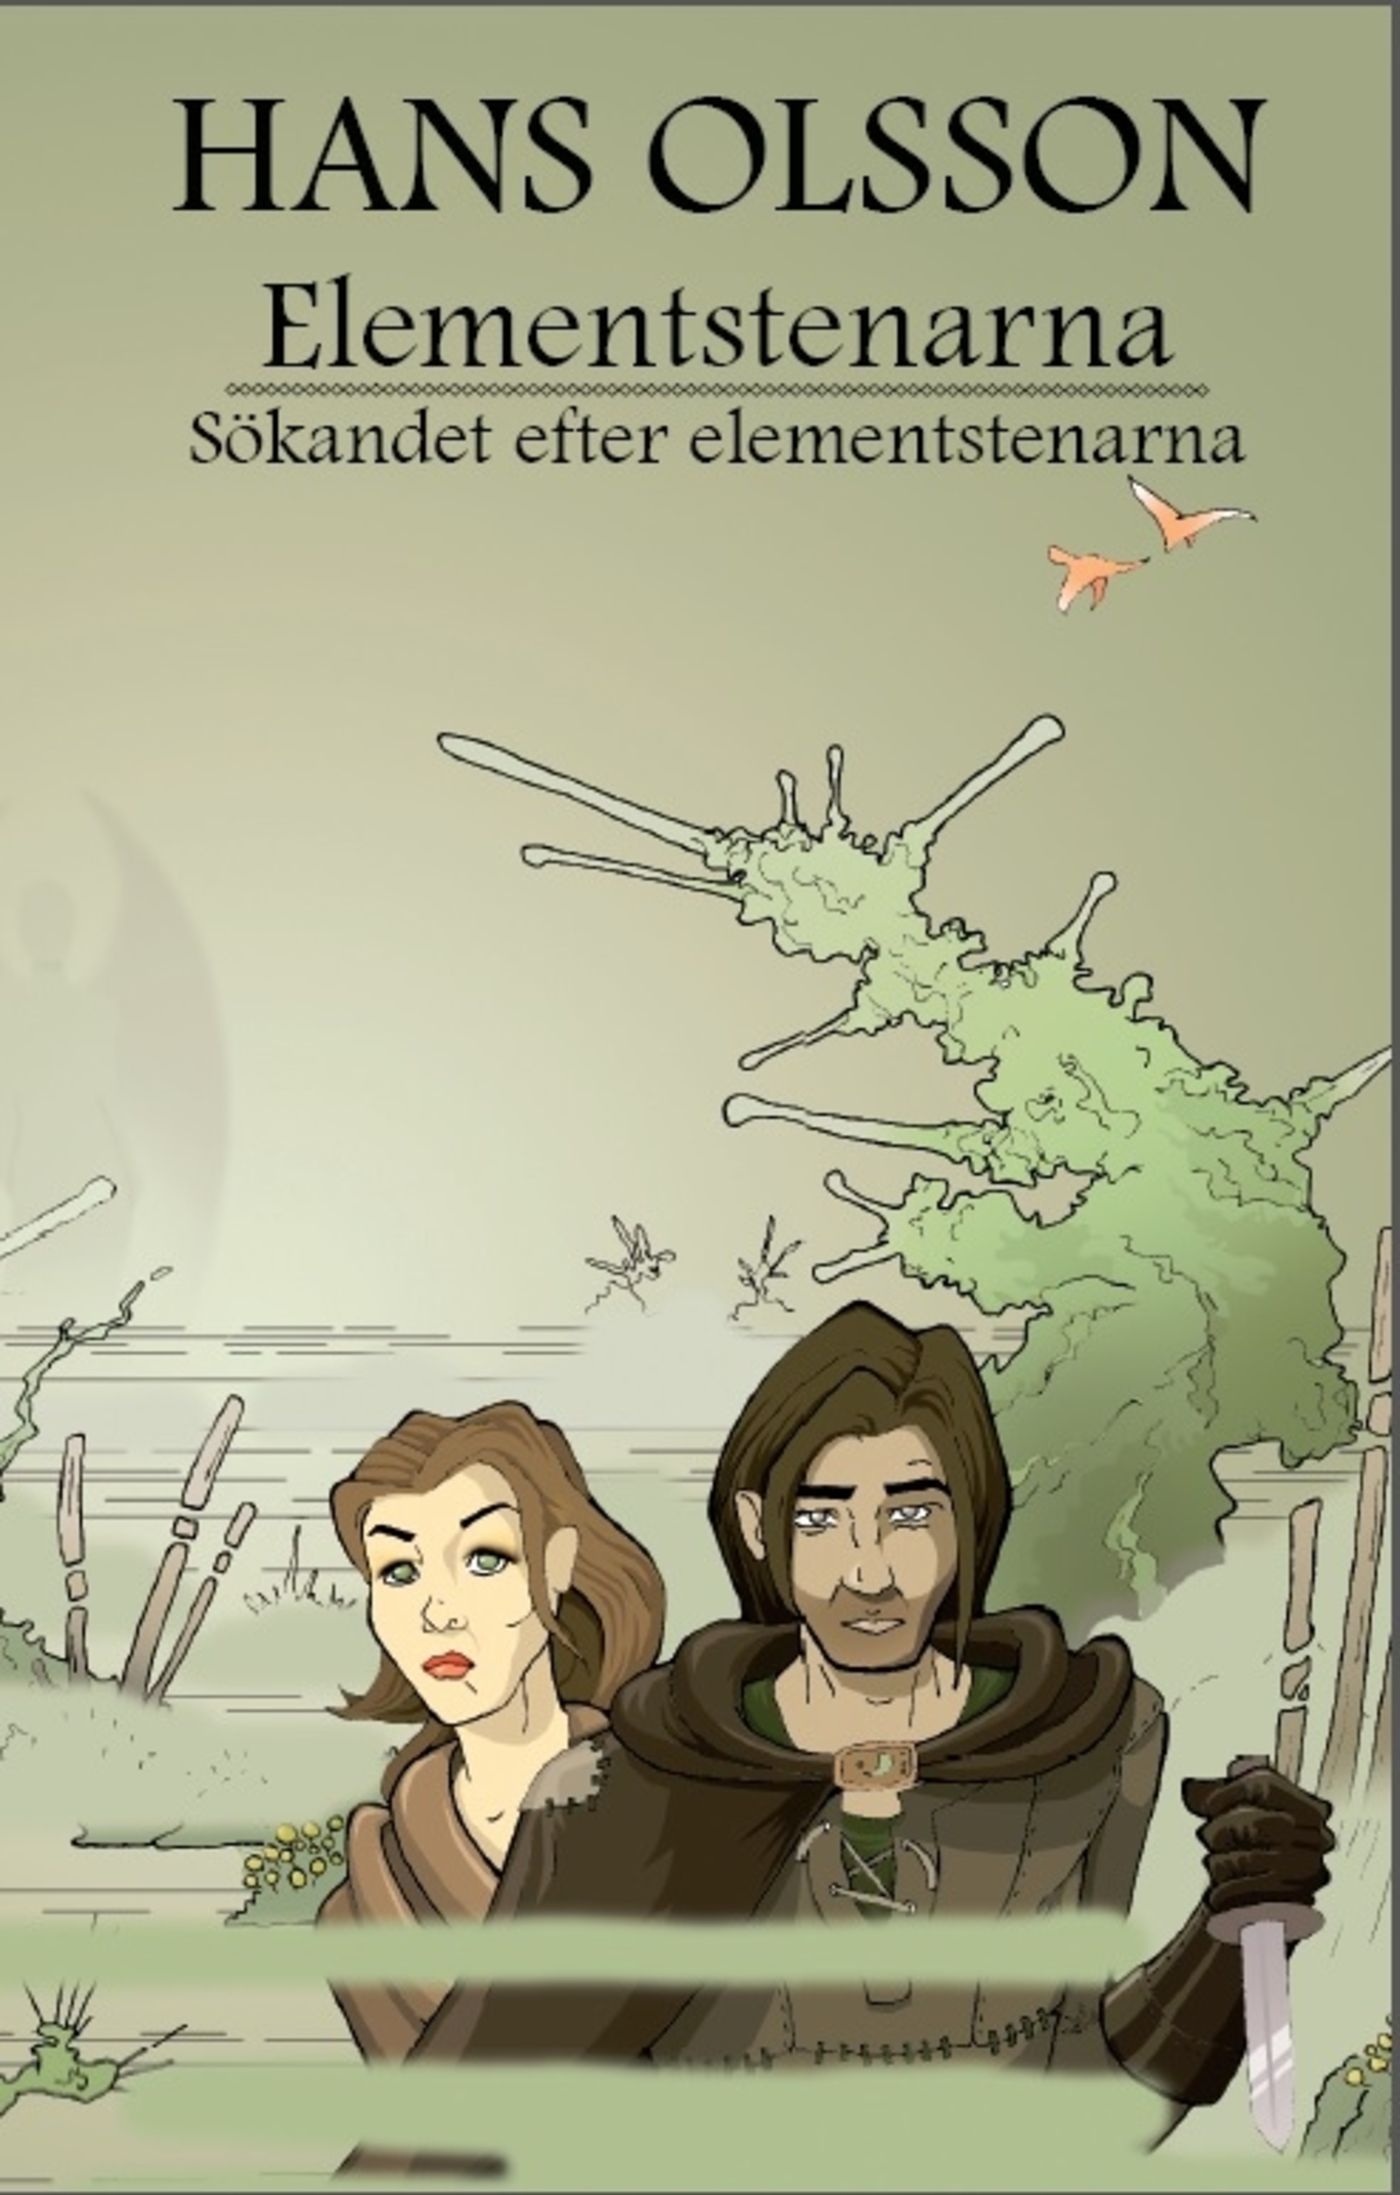 Sökandet efter elementstenarna, e-bok av Hans Olsson